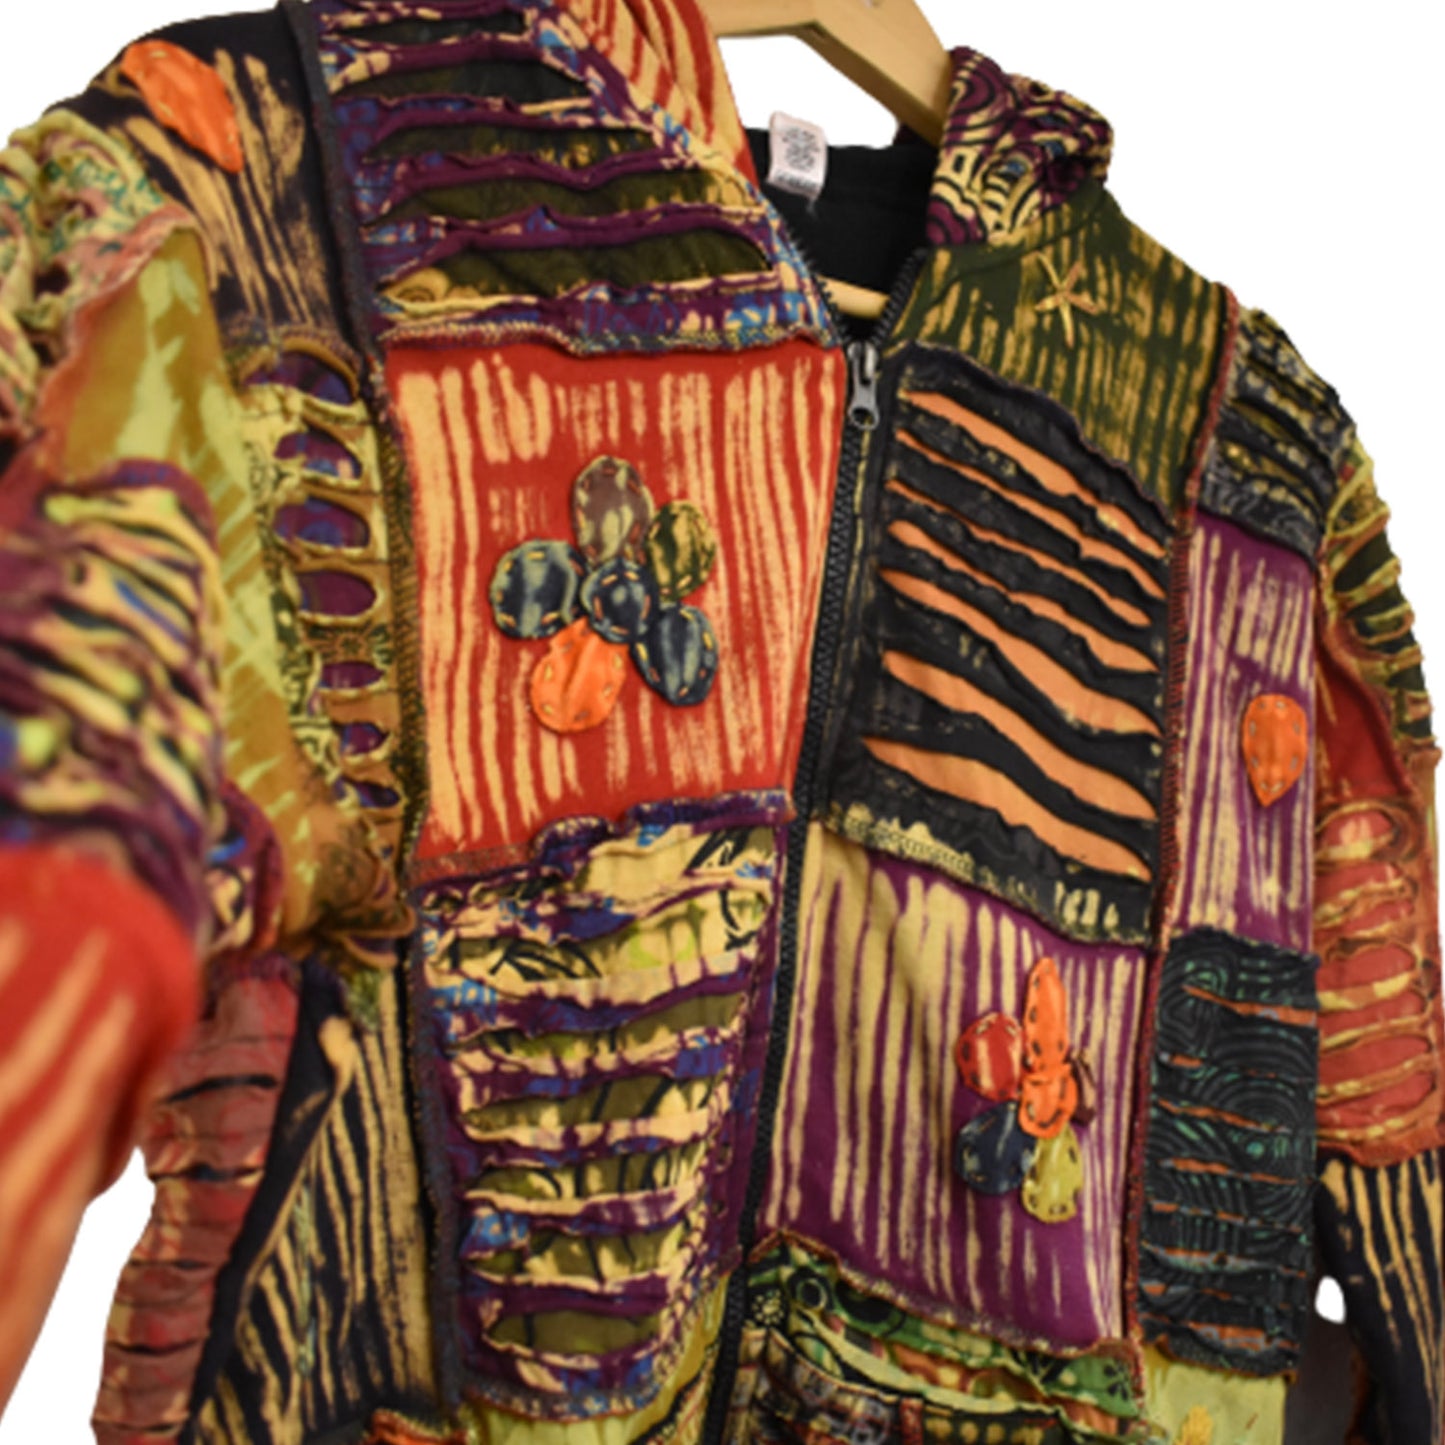 Ganesha handicrafts Patchy Jacket, Jacket, Patchy Jacket, Multicolour Jacket, Design Jacket, Modern jacket